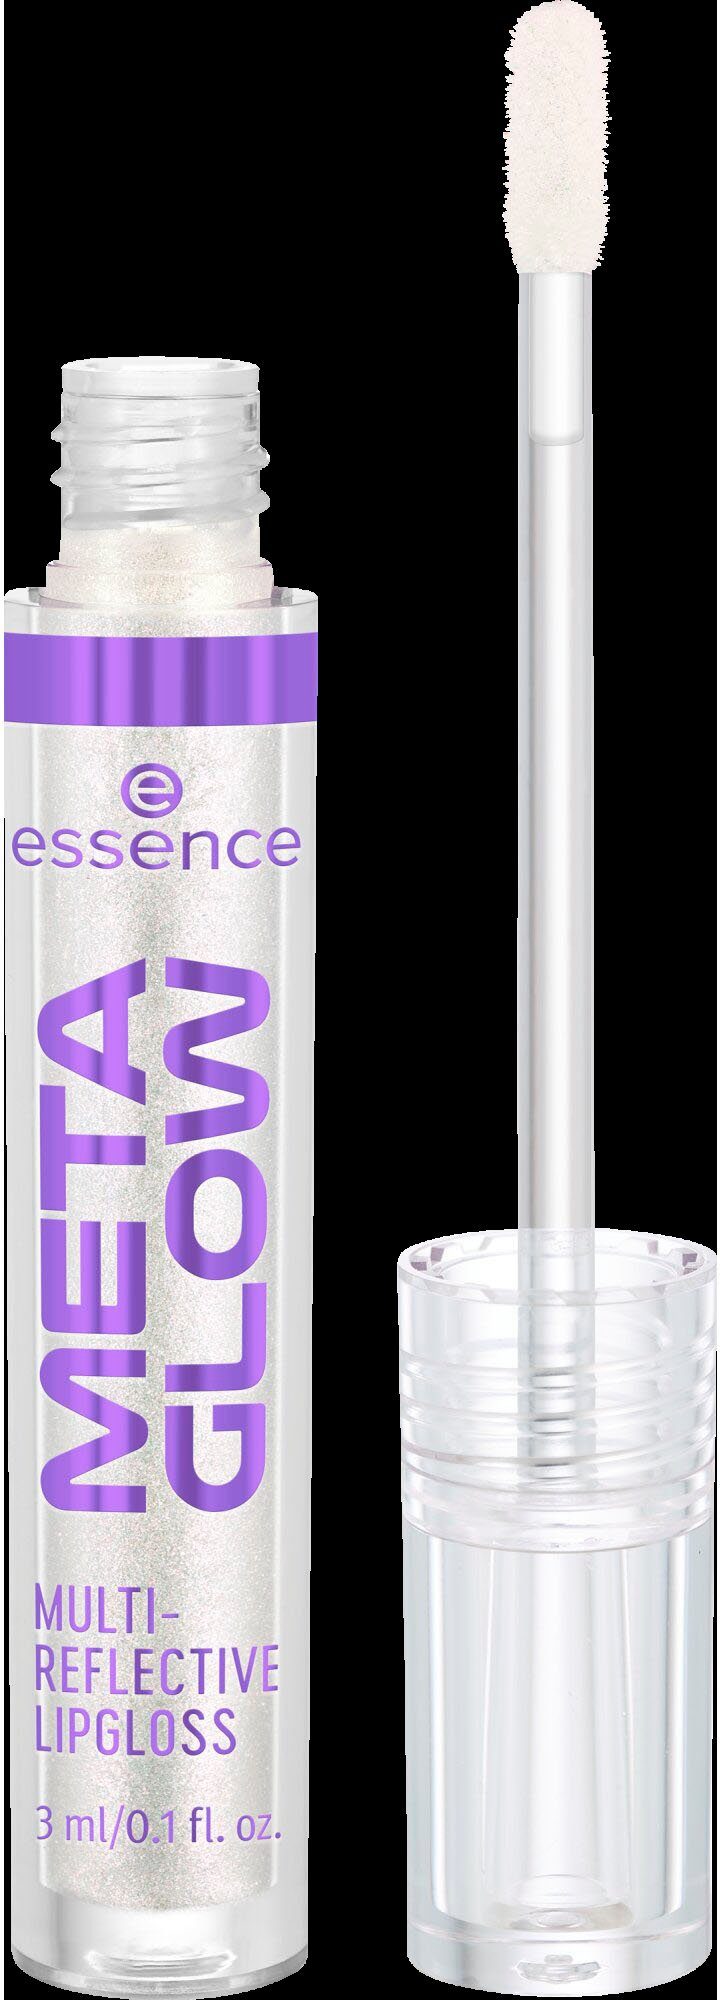 Alleine Topper als perfekt Essence Lipgloss MULTI-REFLECTIVE META Lieblingslippenstift über deinem LIPGLOSS, GLOW oder tragbar